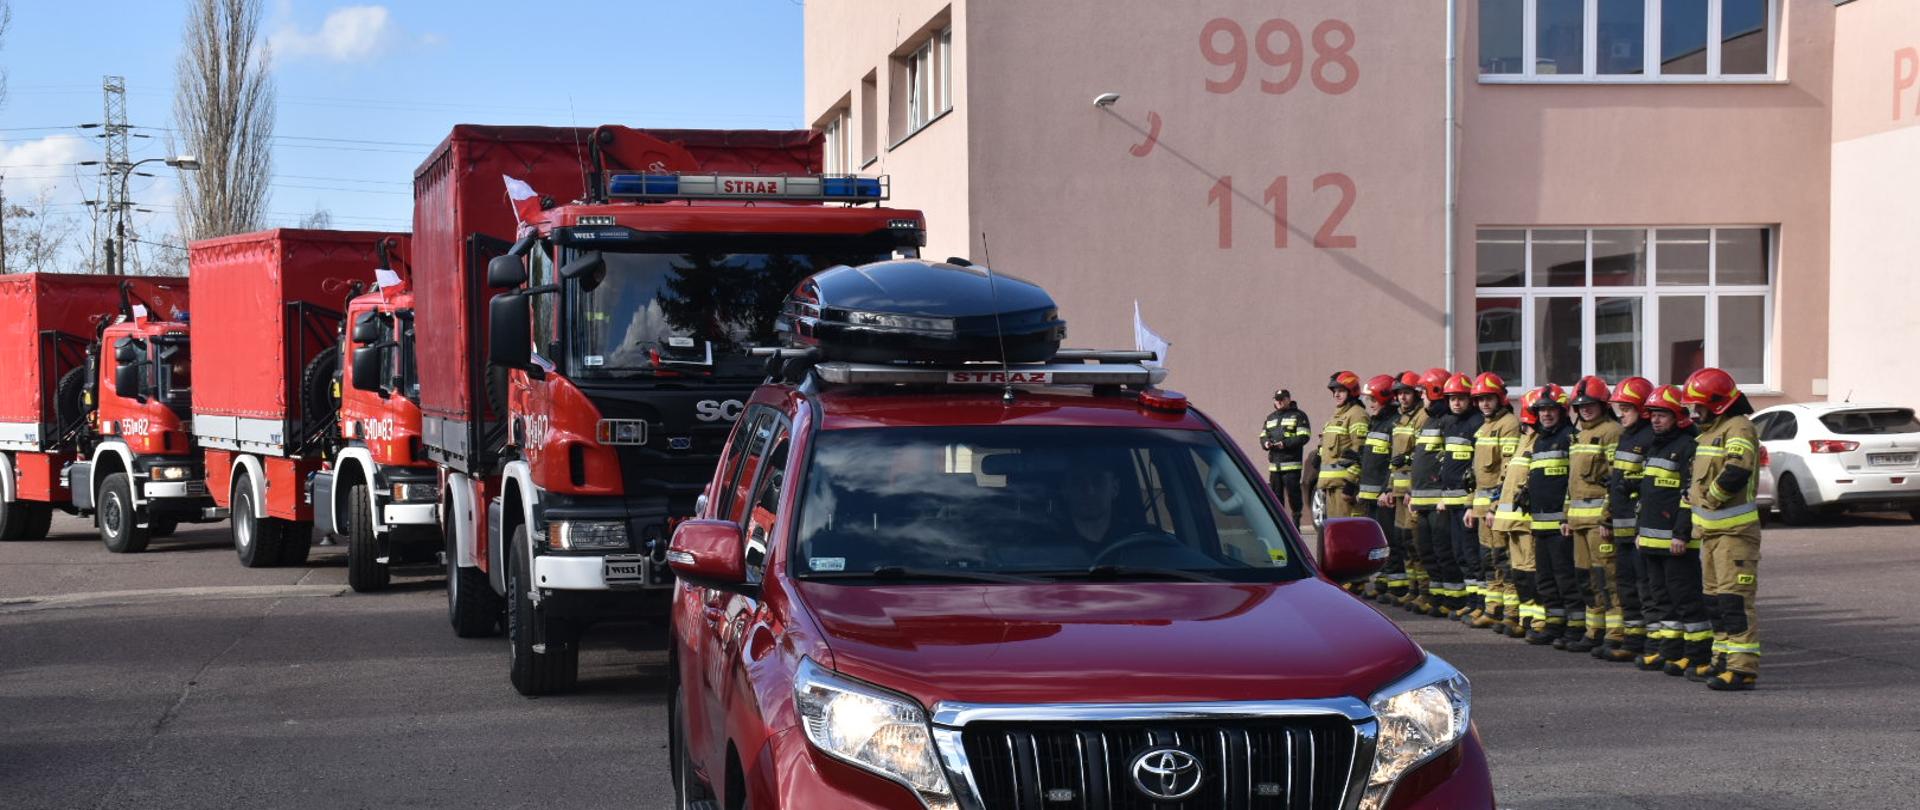 na zdjęciu kolumna czterech samochodów strażackich oraz dwunastu strażaków stojących na zbiórce w rzędzie w tle budynek z napisami 998 i 112